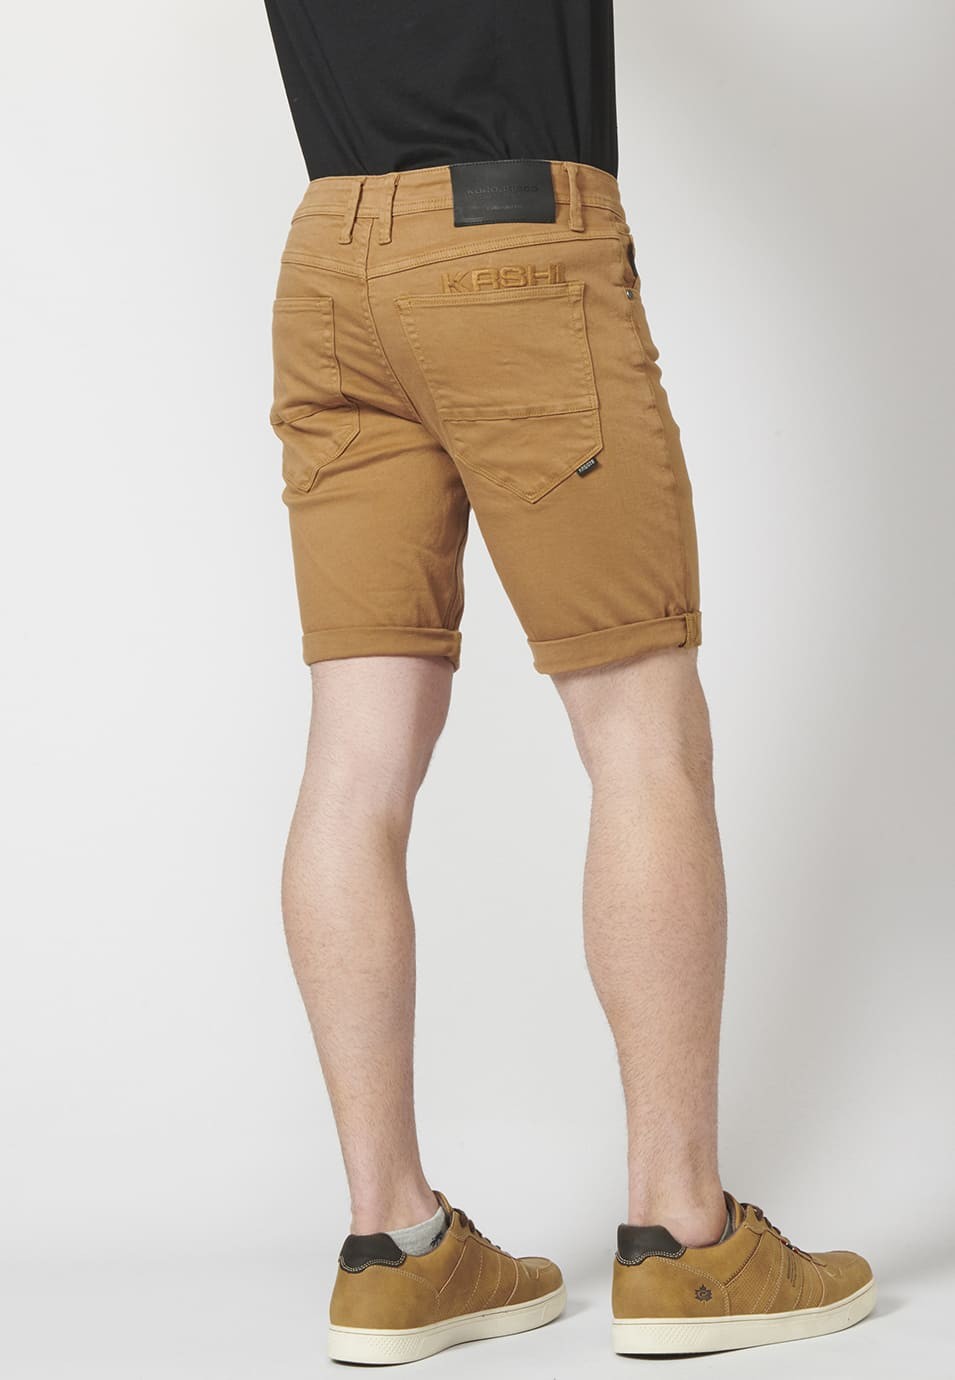 Pantalon corto color tapered fit con detalle de cadena extraíble para Hombre 4